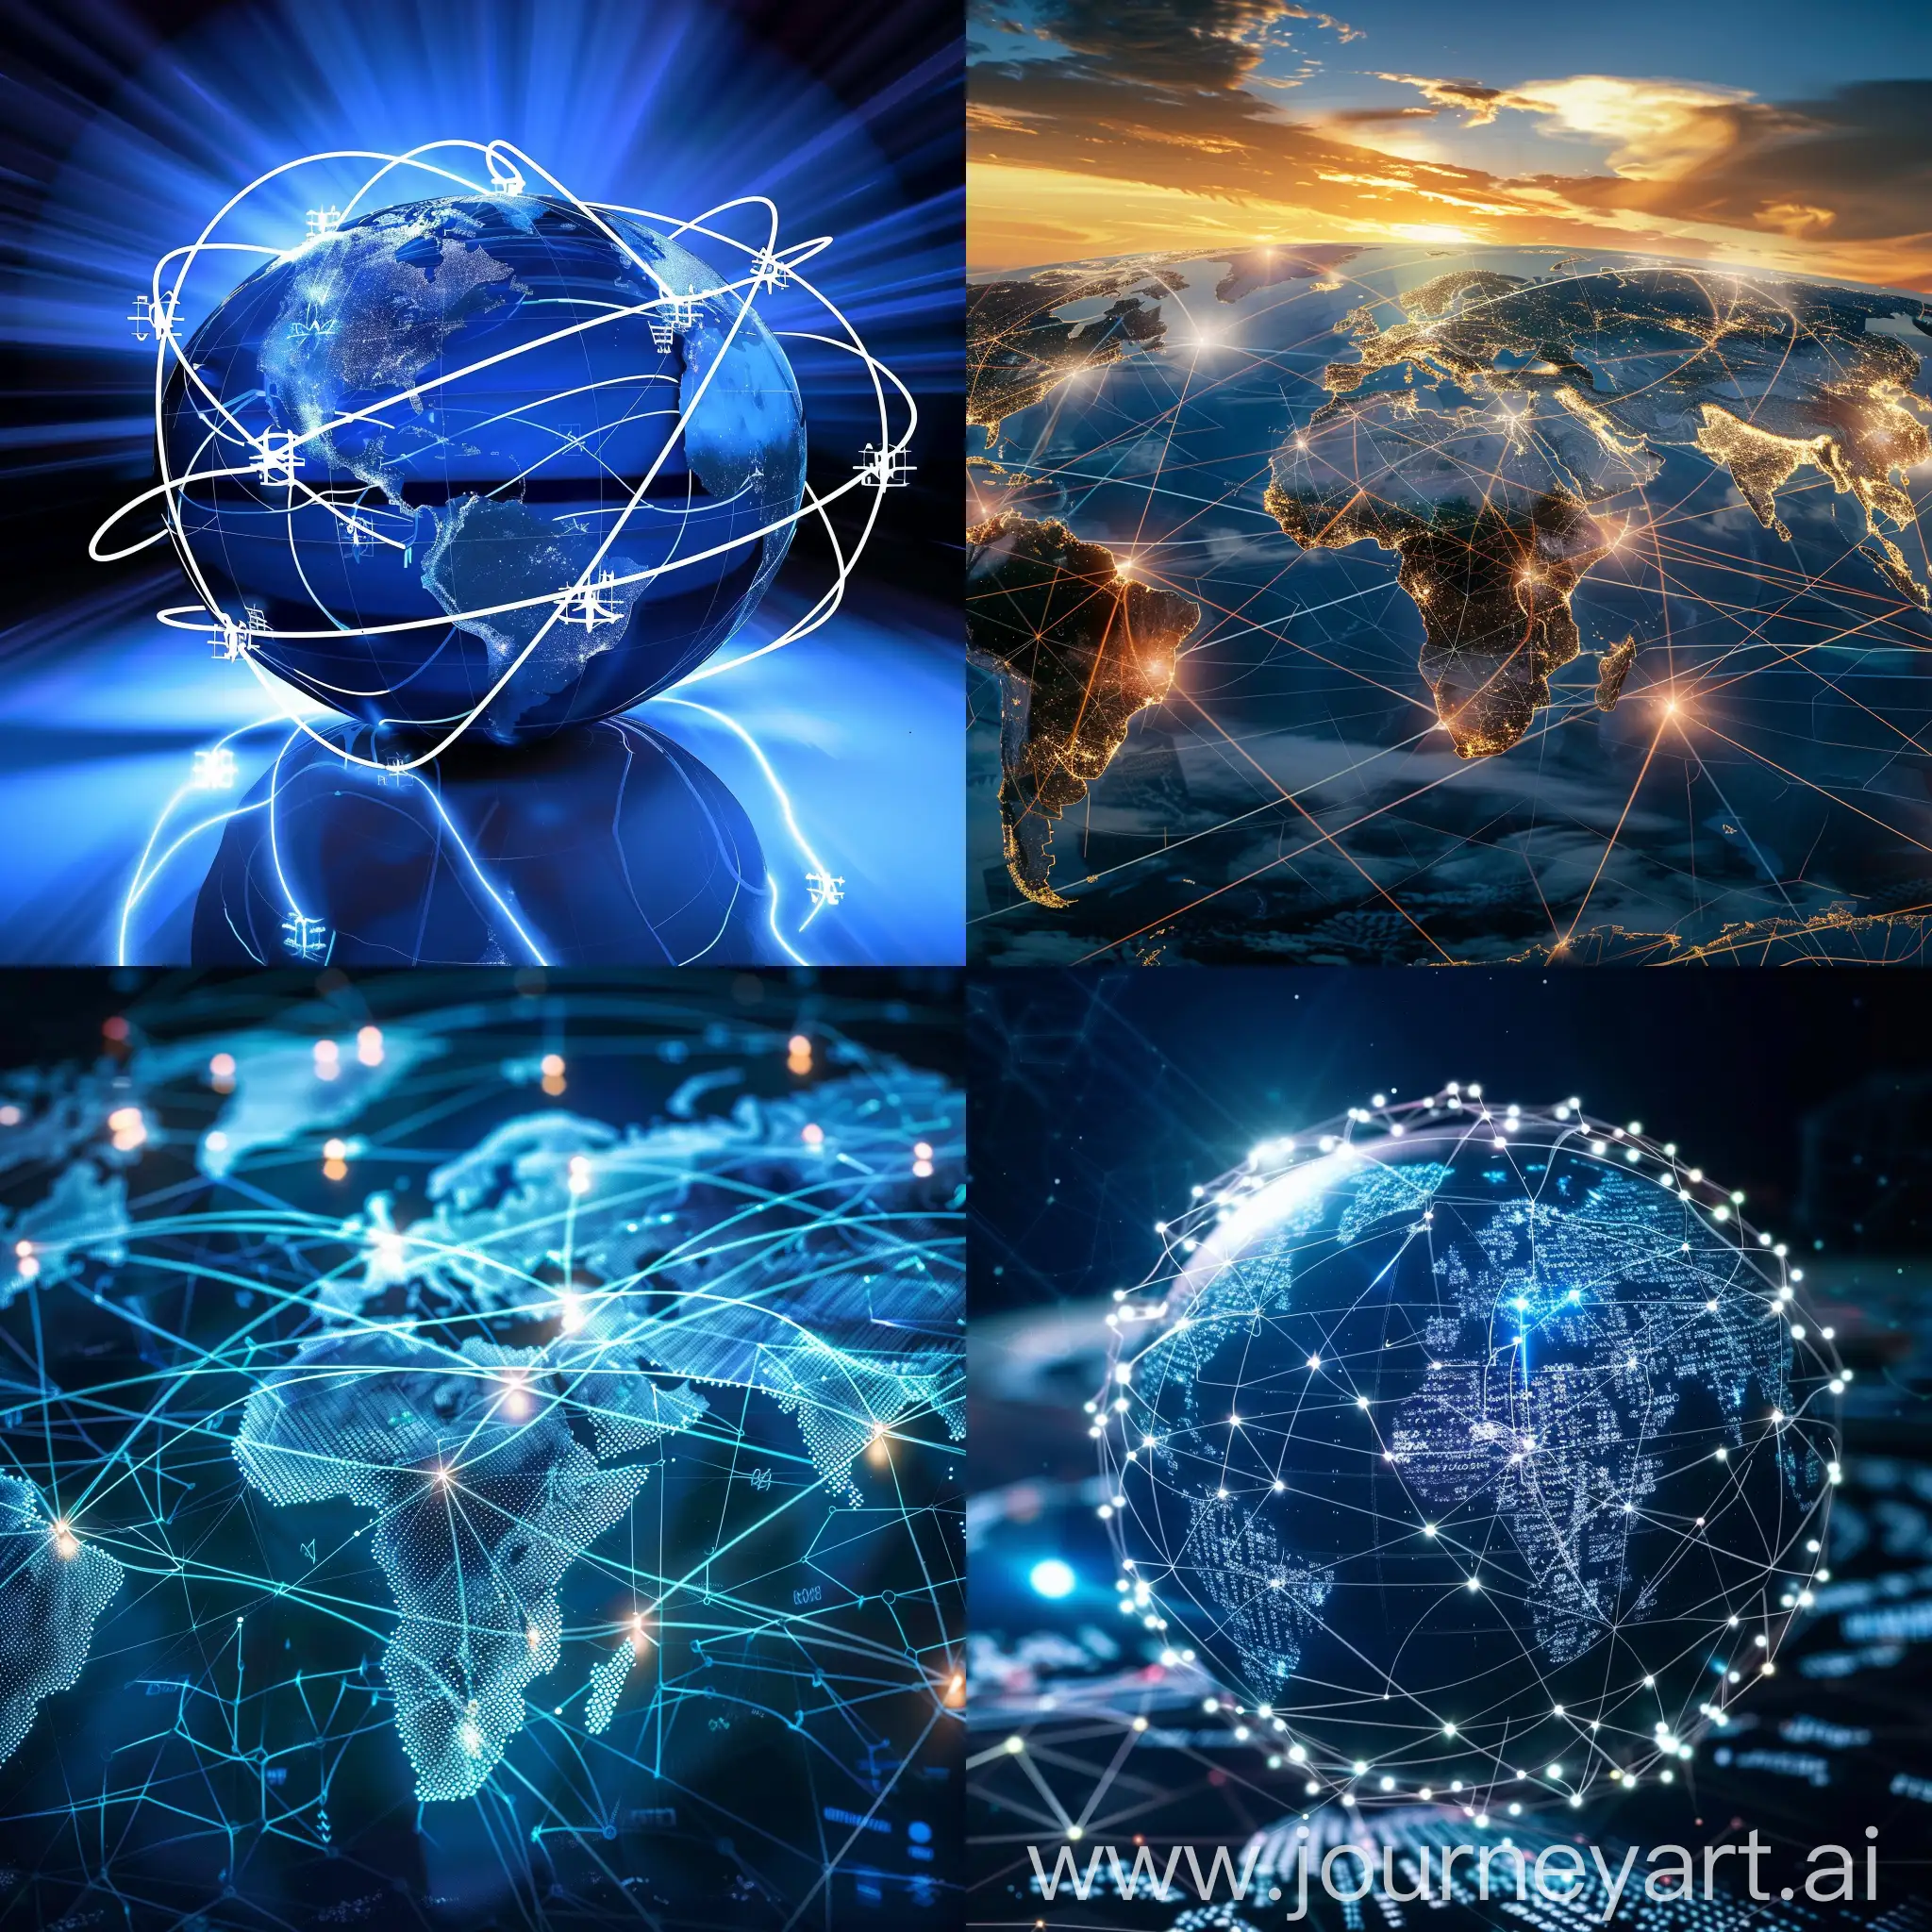 символическое изображение мира, соединённого интернетом, подчеркнёт влияние ИКТ на глобализацию